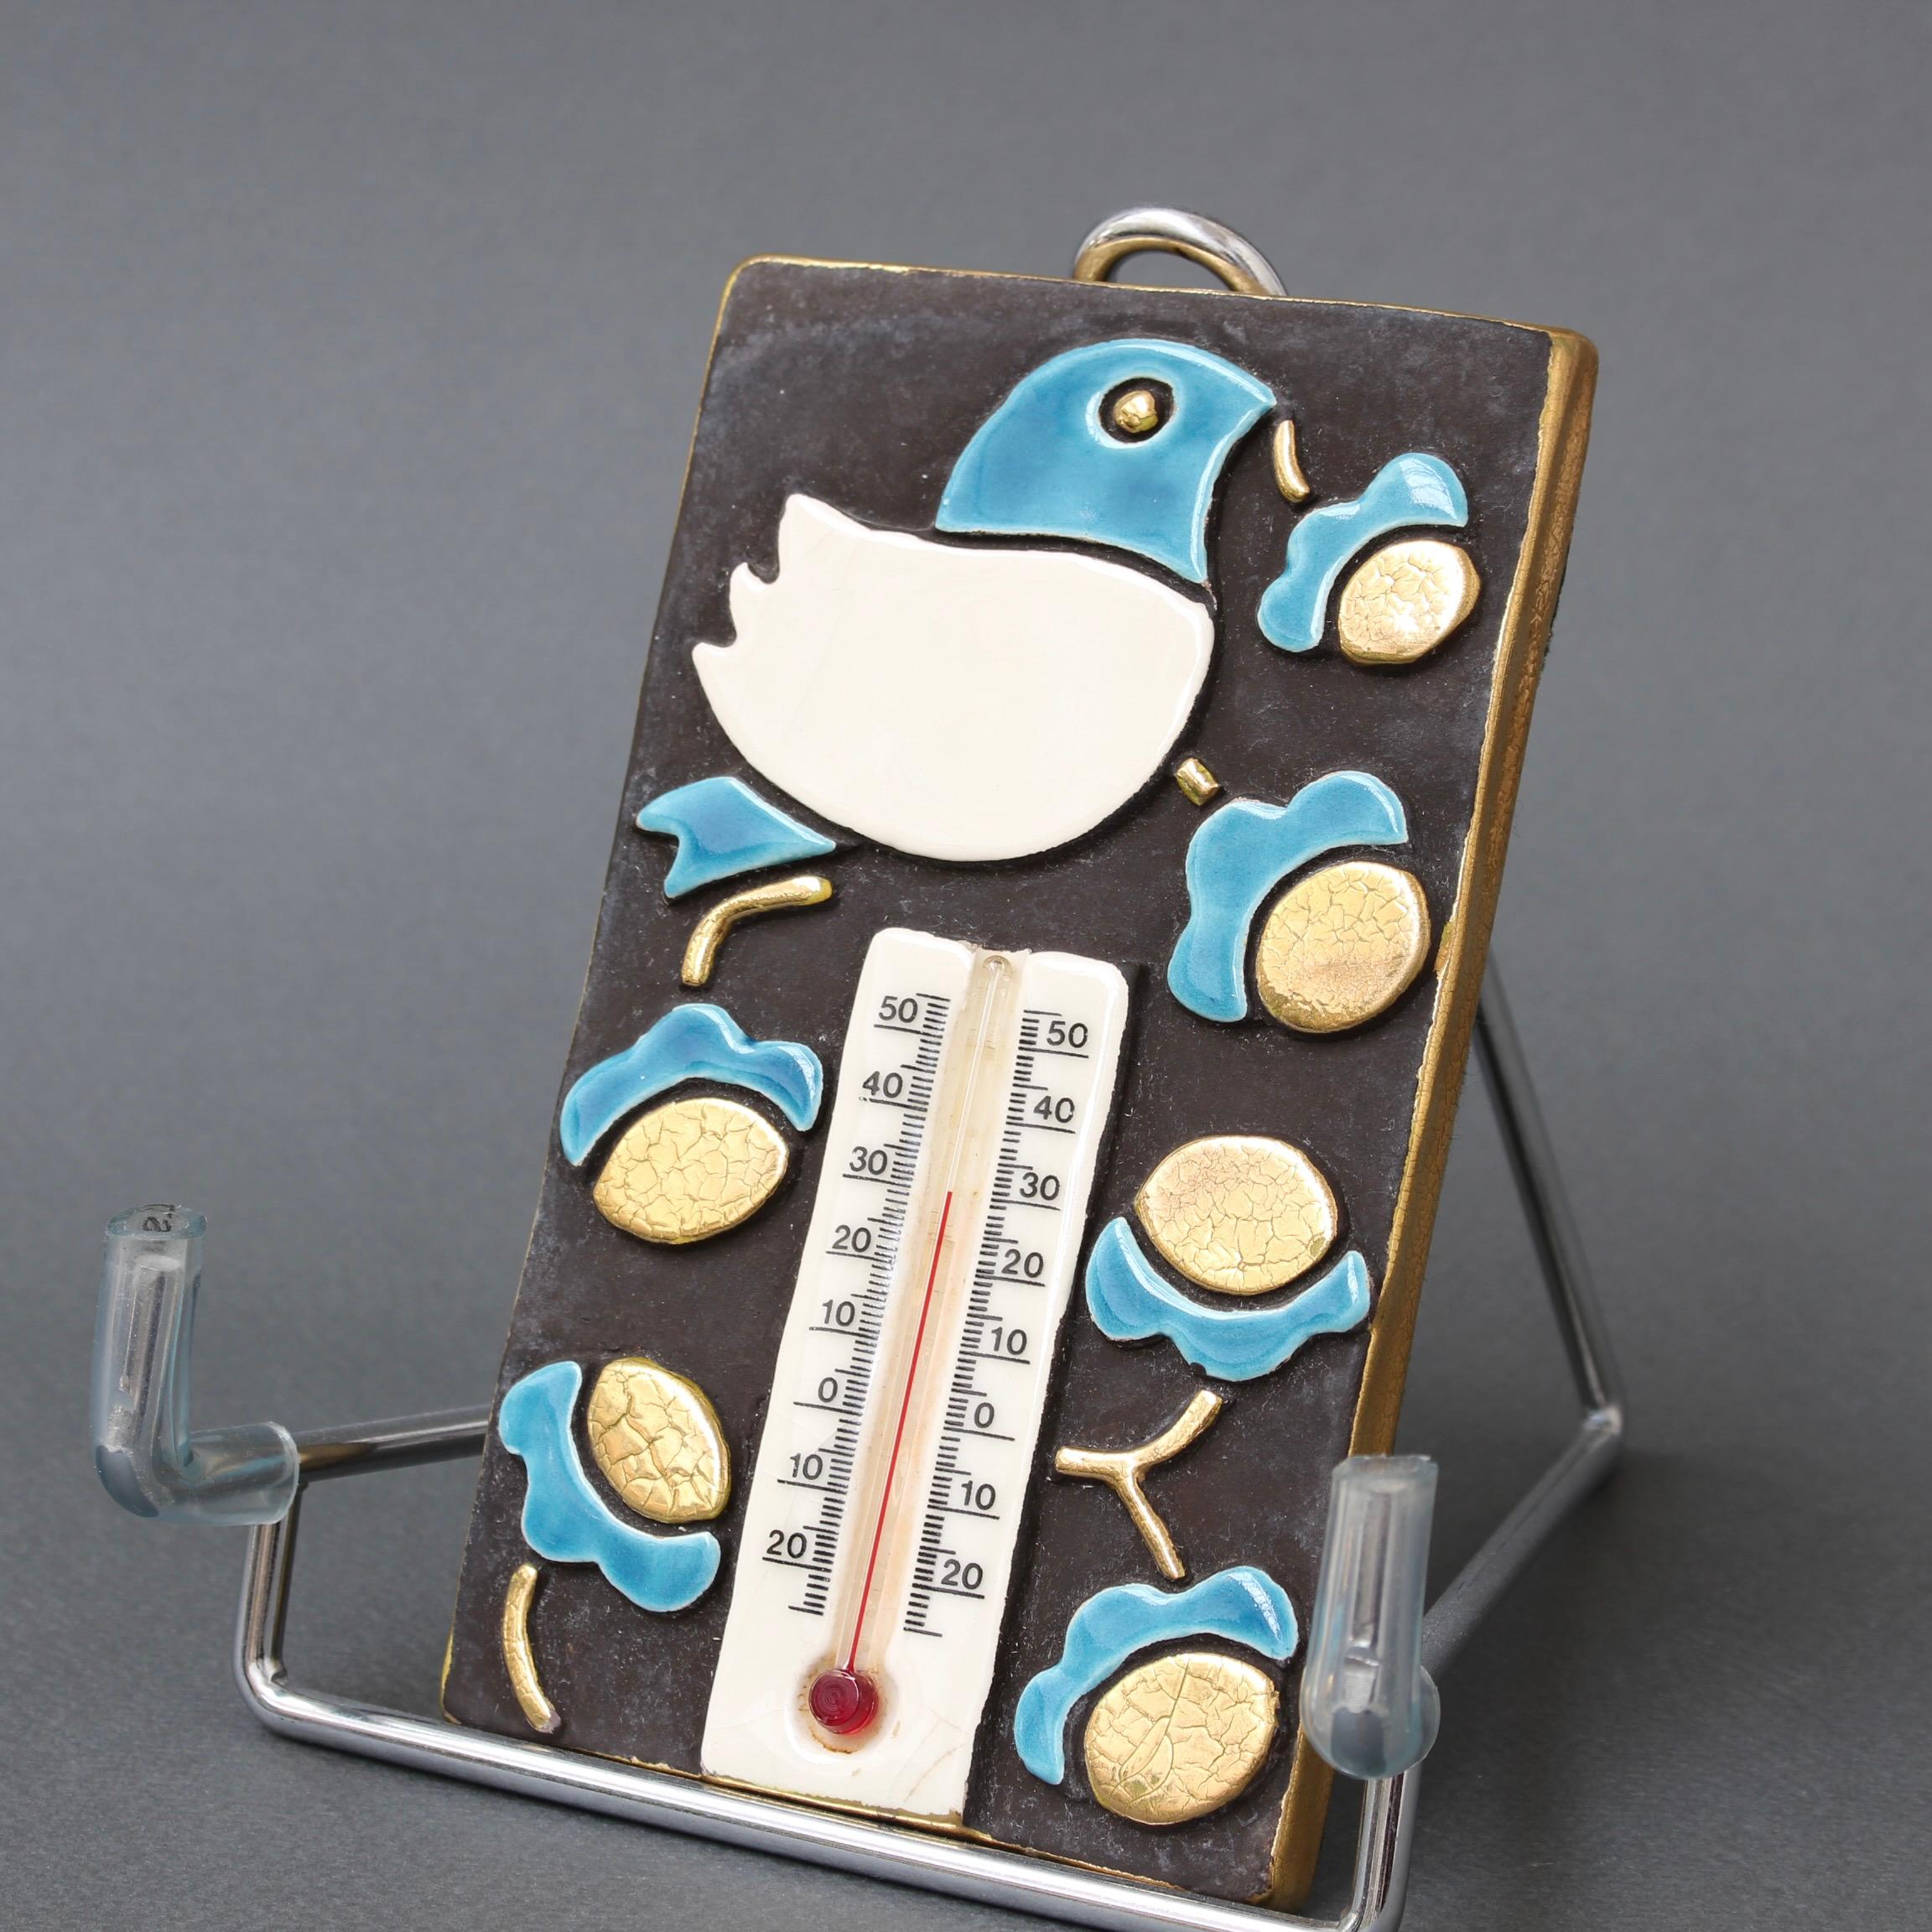 Thermomètre et boîtier décoratifs en céramique française vintage par Mithé Espect (vers les années 1960). Une pièce délicieuse avec un oiseau stylisé et des fleurs. Le fond rectangulaire en céramique du décor est en brun chocolat avec des bords en